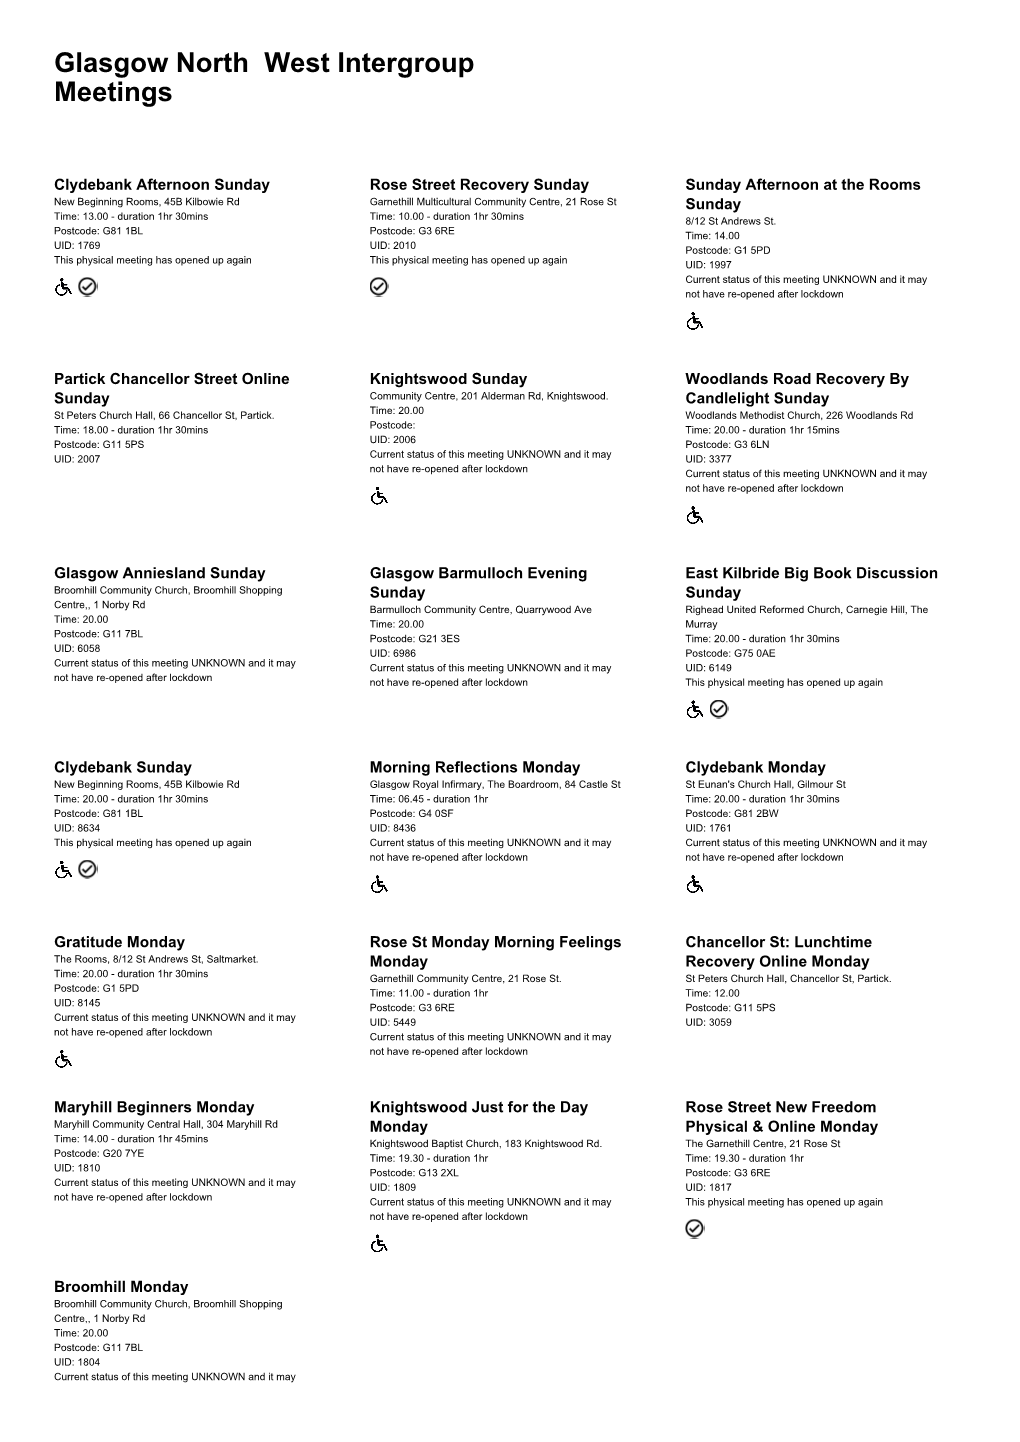 Download Meetings List in PDF Format